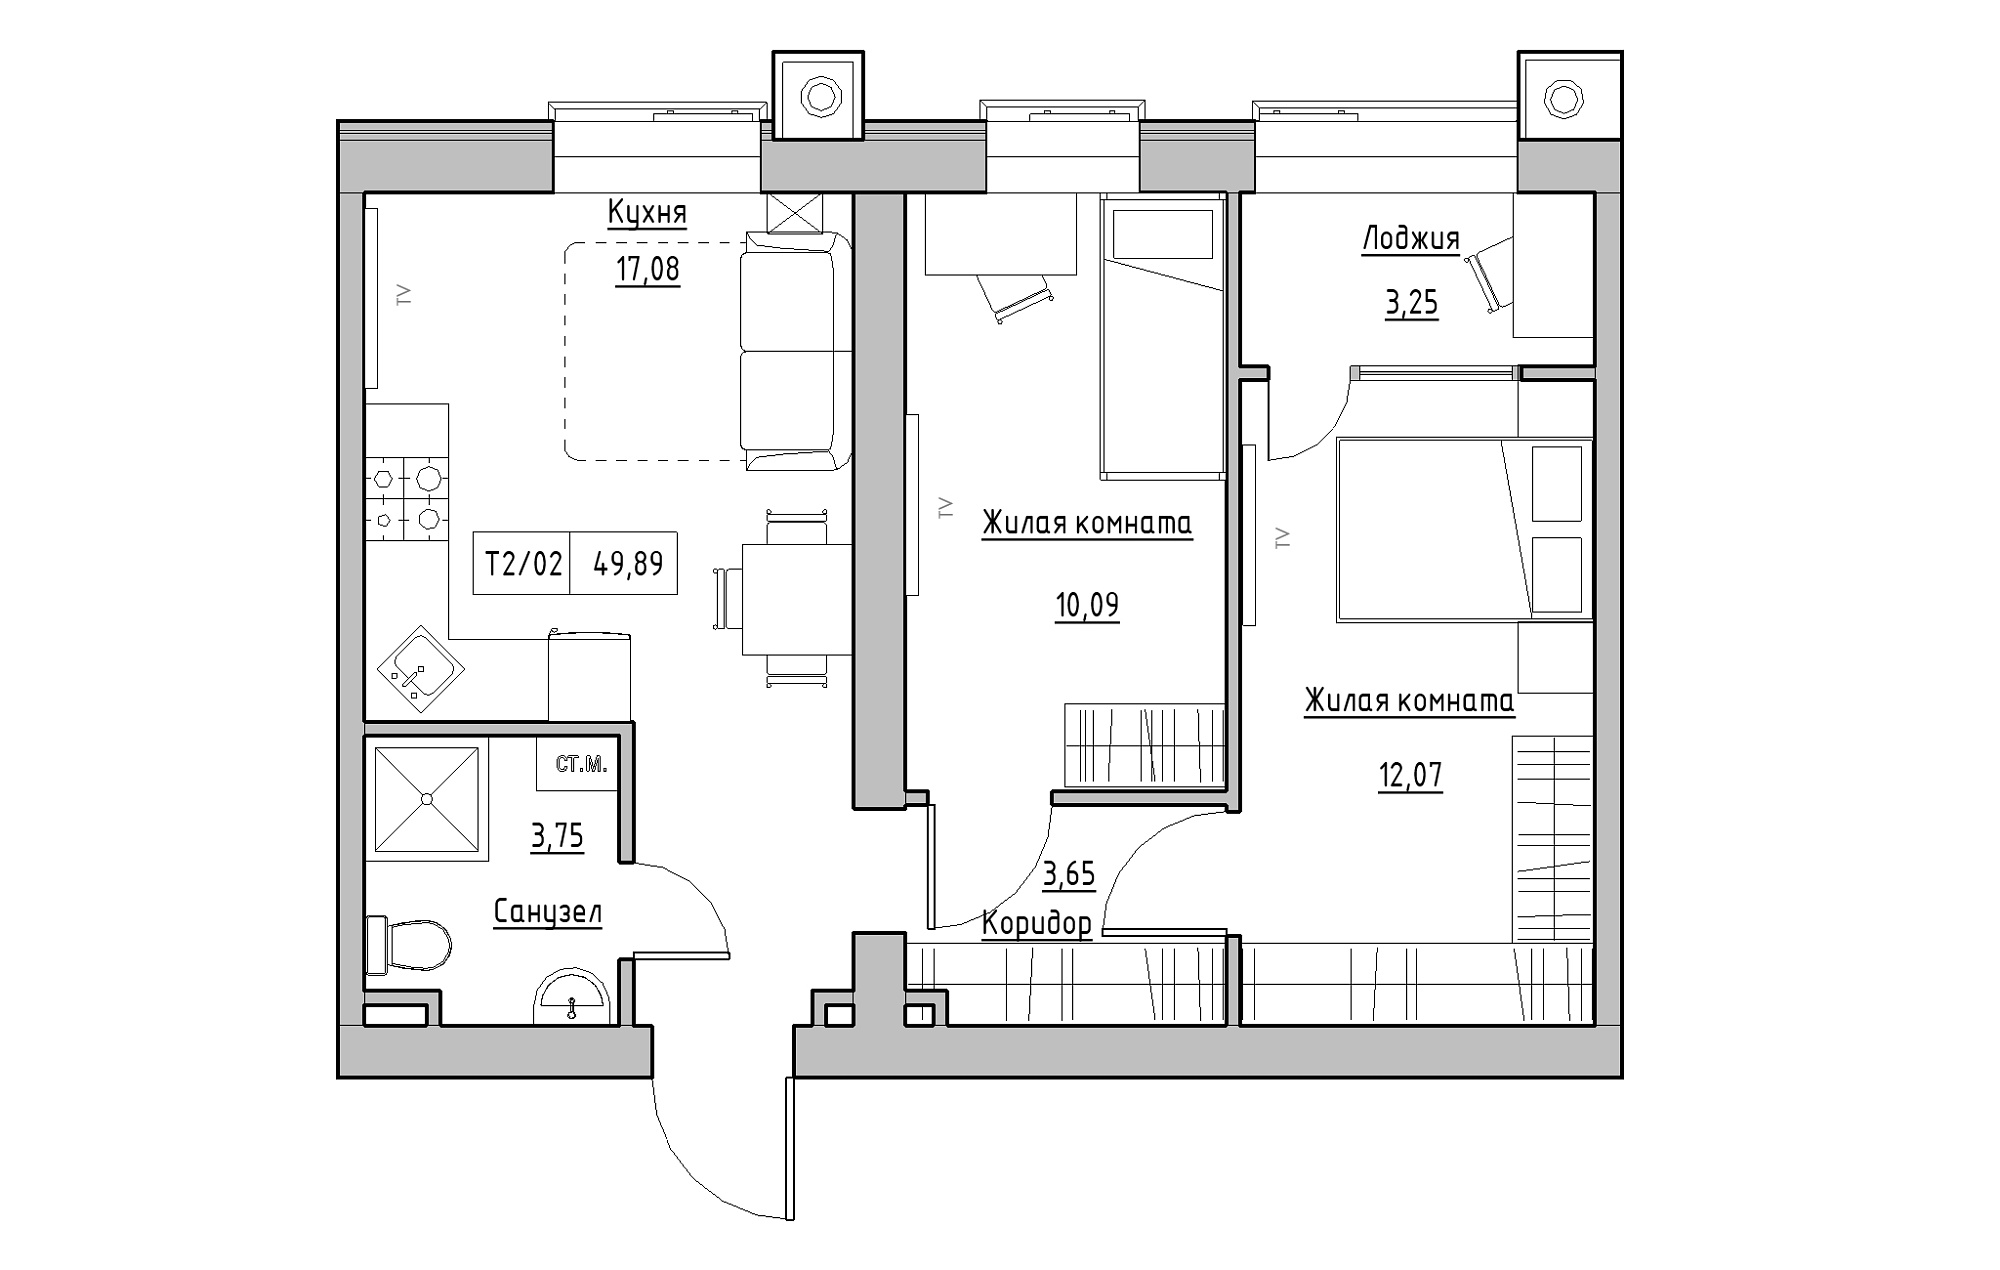 Планировка 2-к квартира площей 49.89м2, KS-013-01/0007.